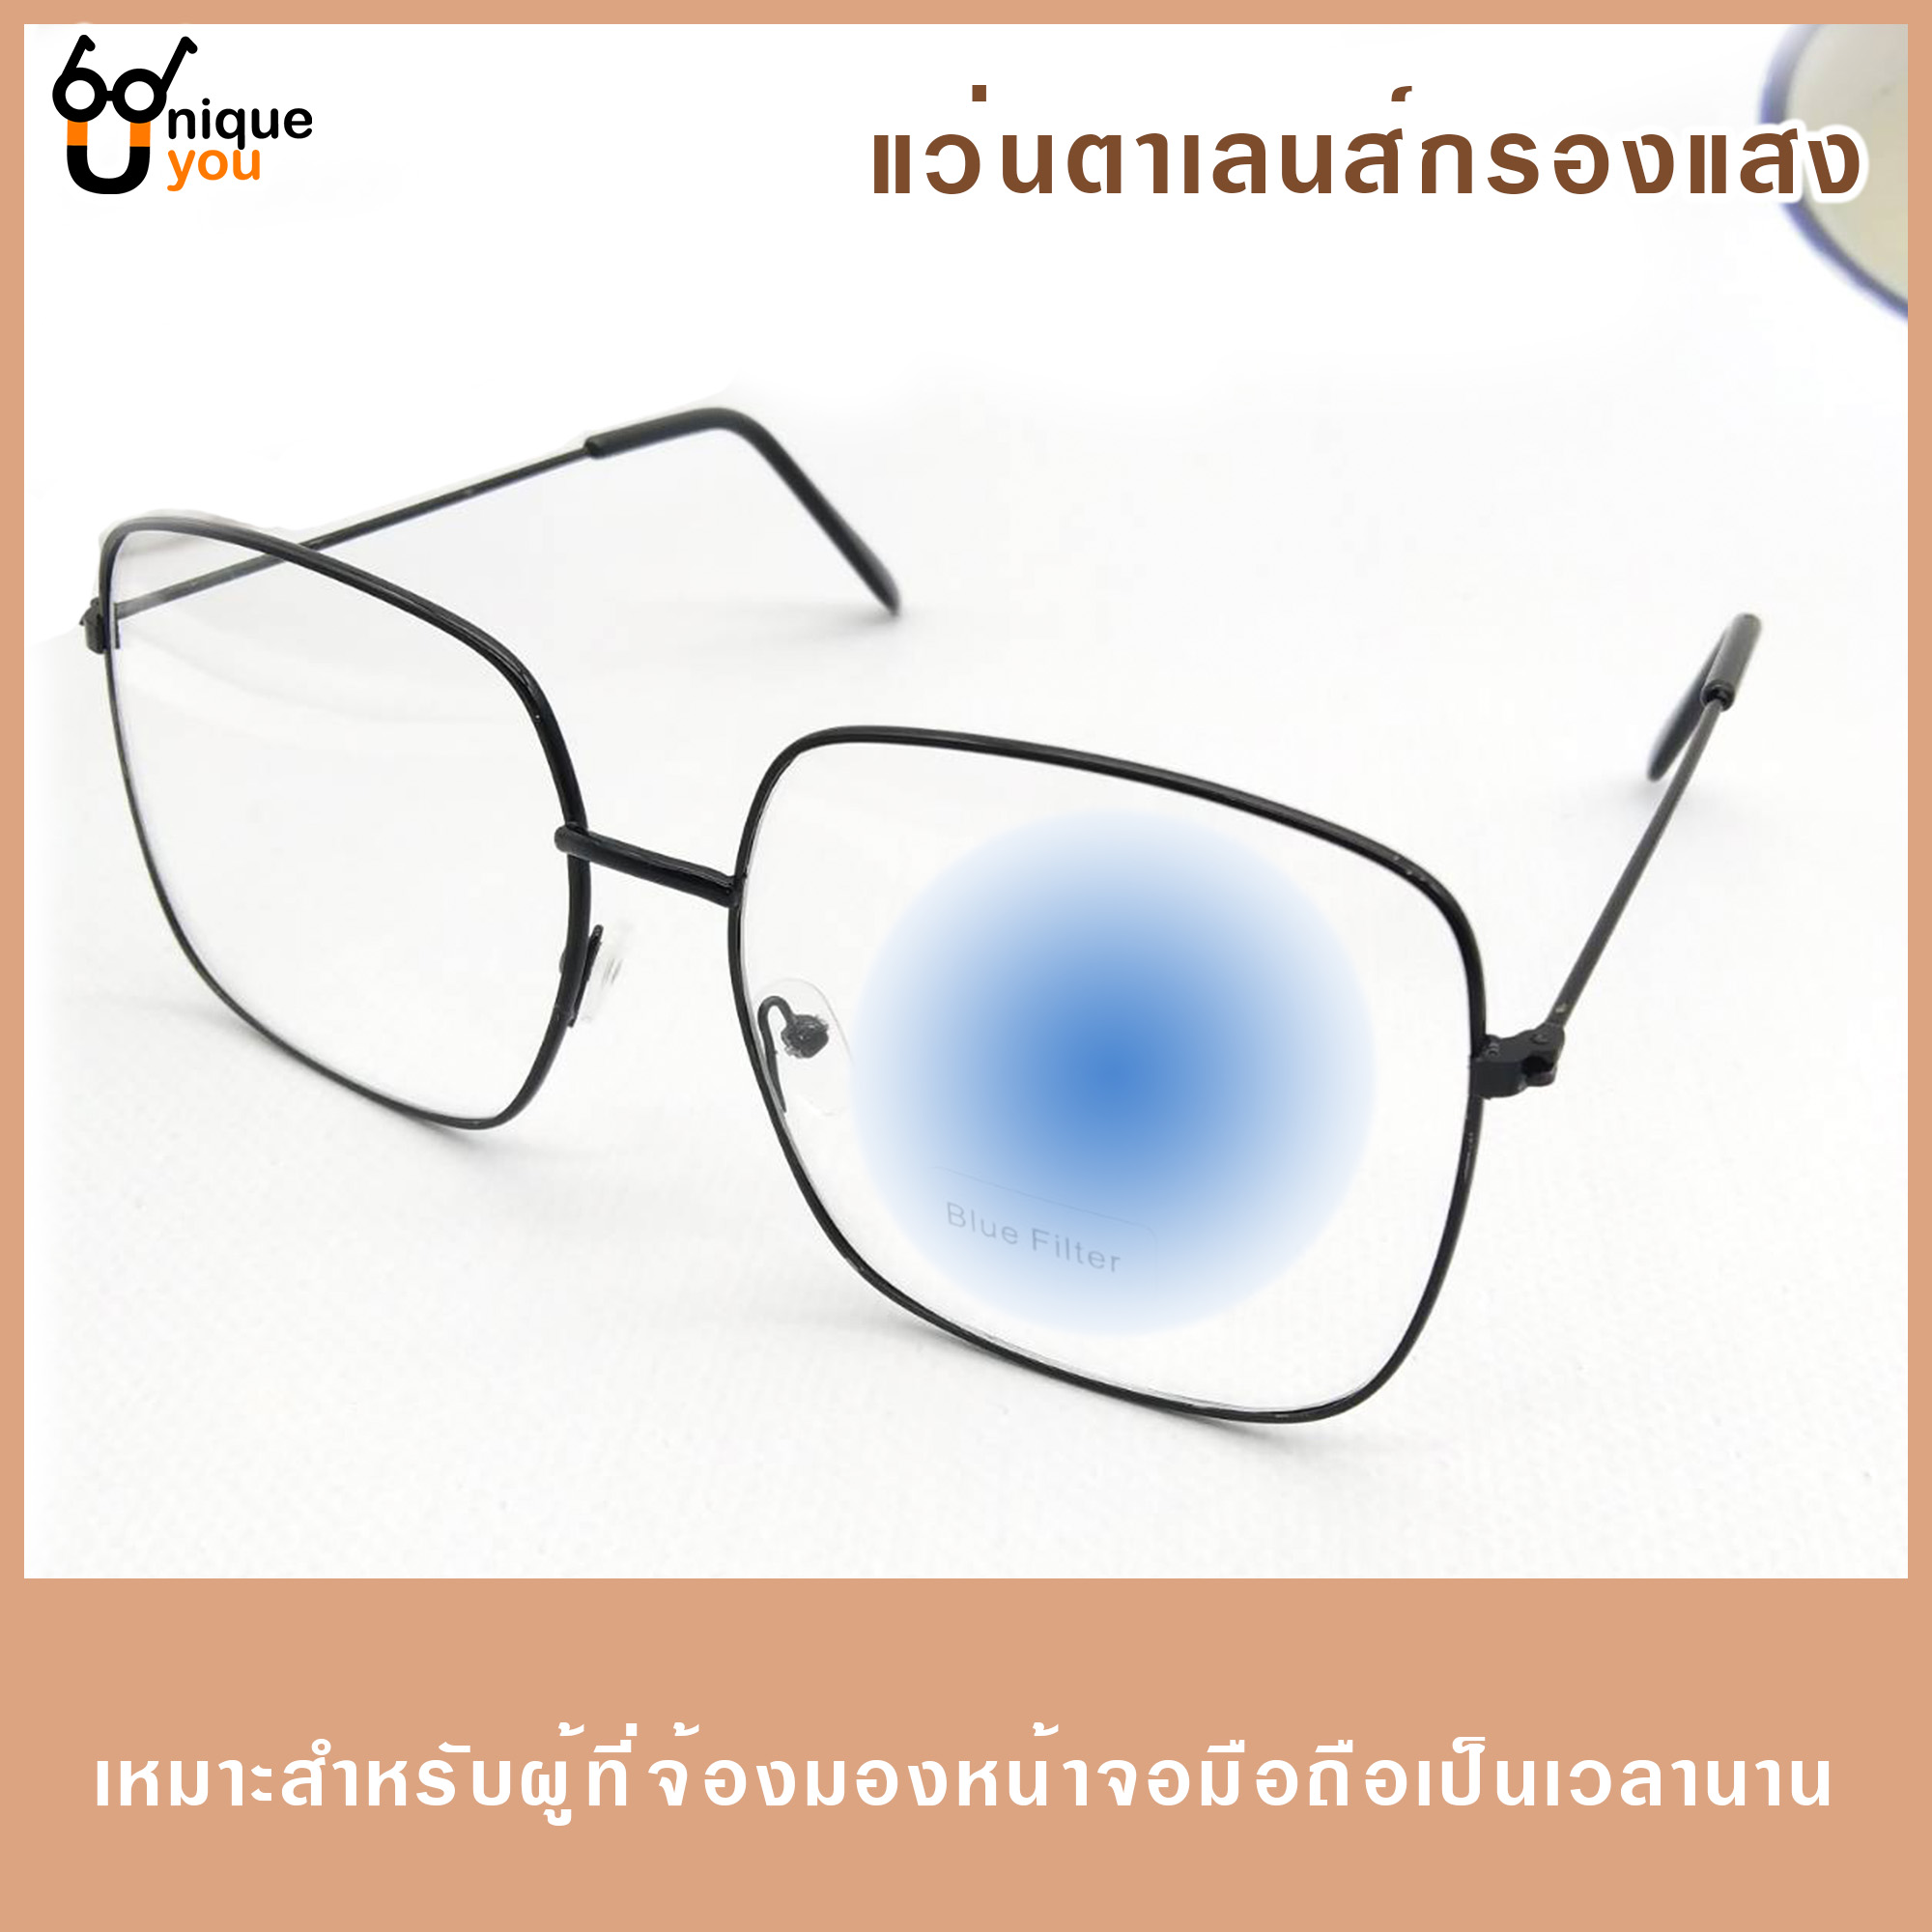 รูปภาพเพิ่มเติมเกี่ยวกับ Uniq แว่นตากรองแสงสีฟ้าBlter เลนส์กรองแสงสีฟ้า พร้อมผ้าเช็ดแว่นและซองใส่แว่น